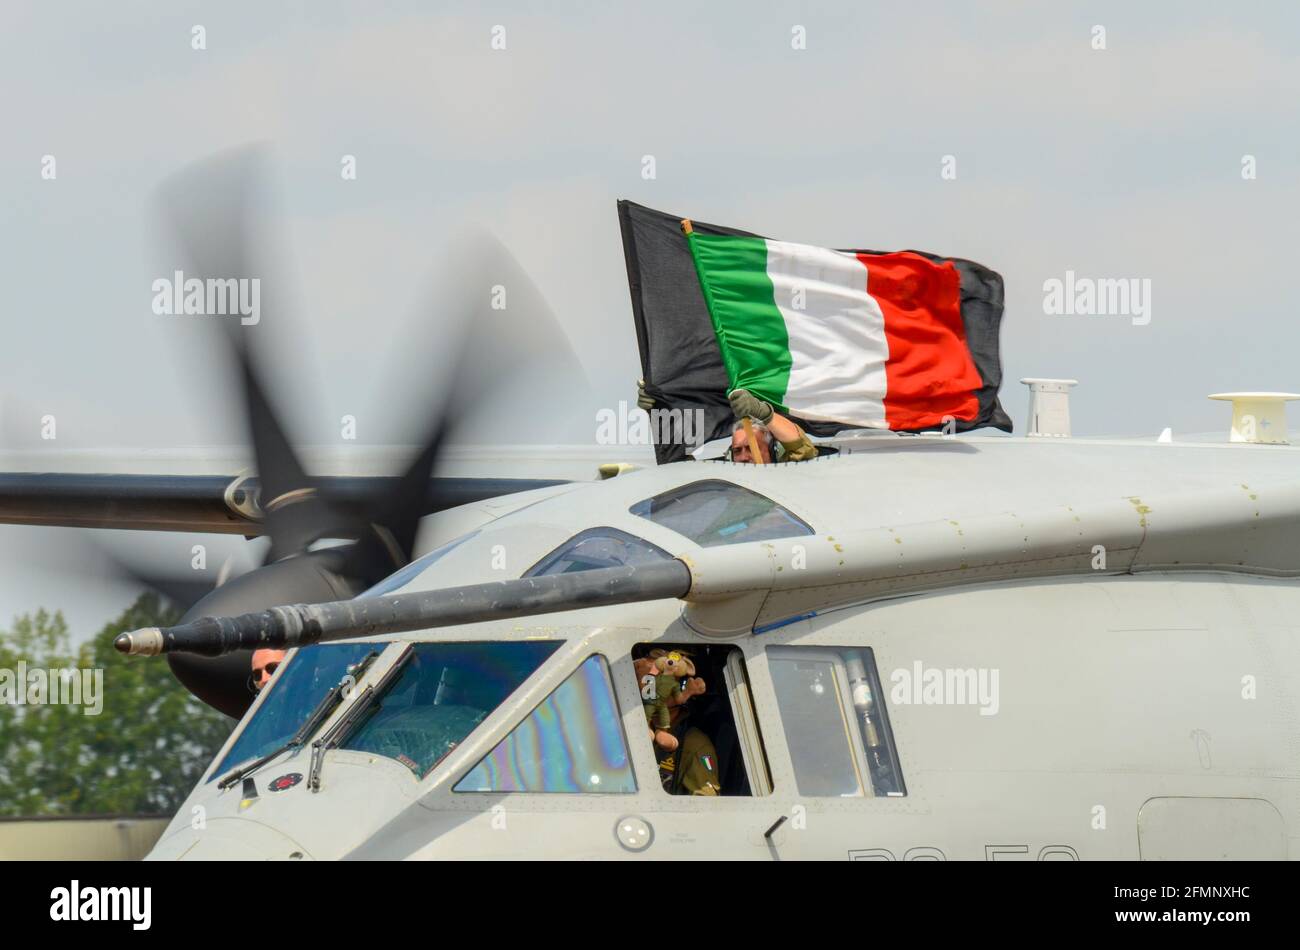 Italian Air Force, Aeronautica Militare Alenia C-27J avion de transport Spartan à Royal International Air Tattoo, RIAT, RAF Fairford, Royaume-Uni. Drapeau d'équipage Banque D'Images